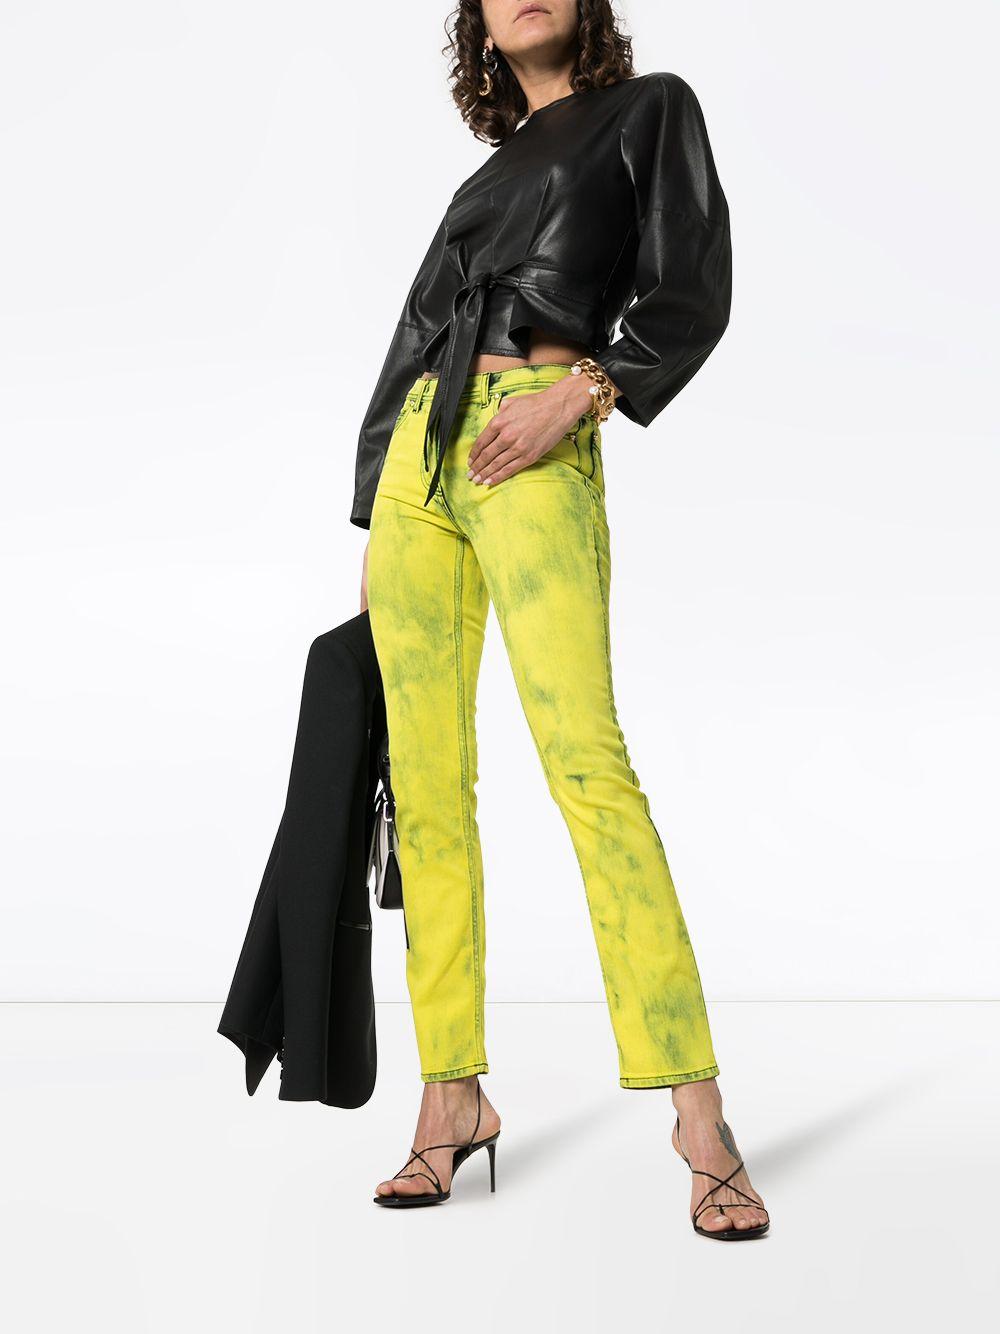 Versace Gelbe Acid Wash Denim Skinny Jeans mit Logo Label

Diese säuregelbe Versace Skinny-Jeans mit Logo-Waschung wurde in Italien fachmännisch aus Stretch-Denim gefertigt. Sie verfügt über den üblichen Hosenschlitz und einen Knopfverschluss mit